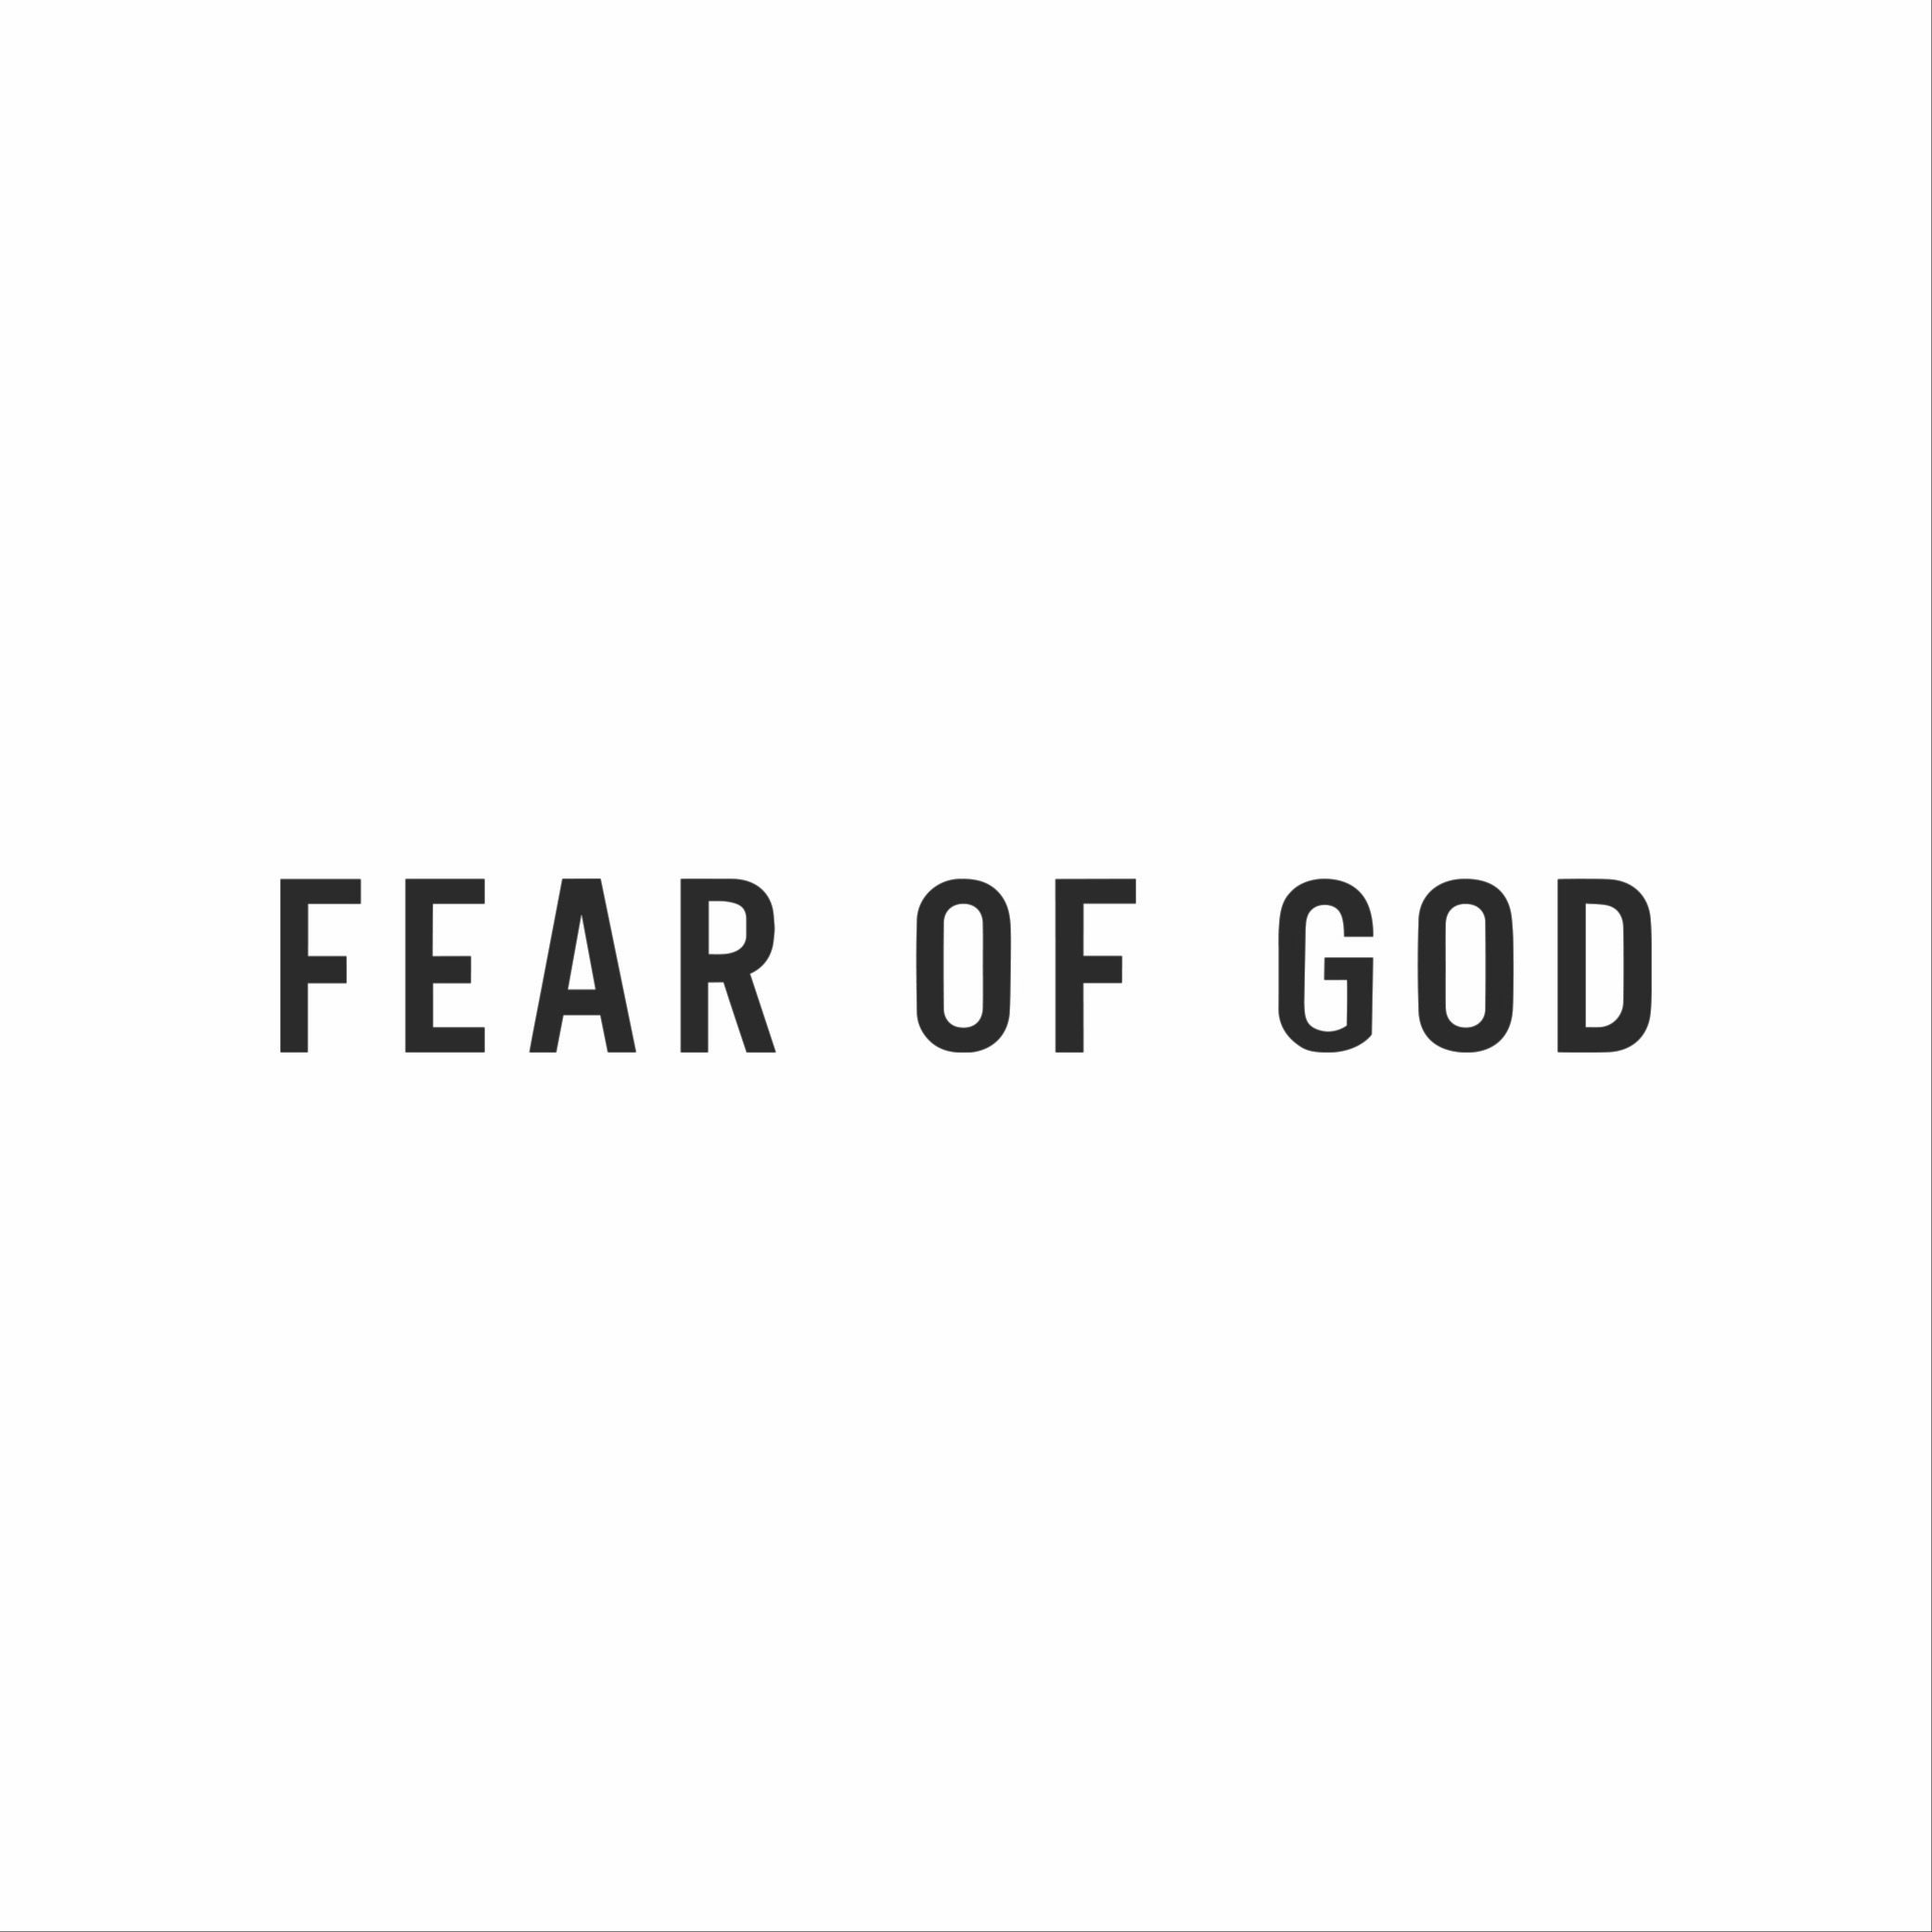 Air Fear of God | Fear of God's 